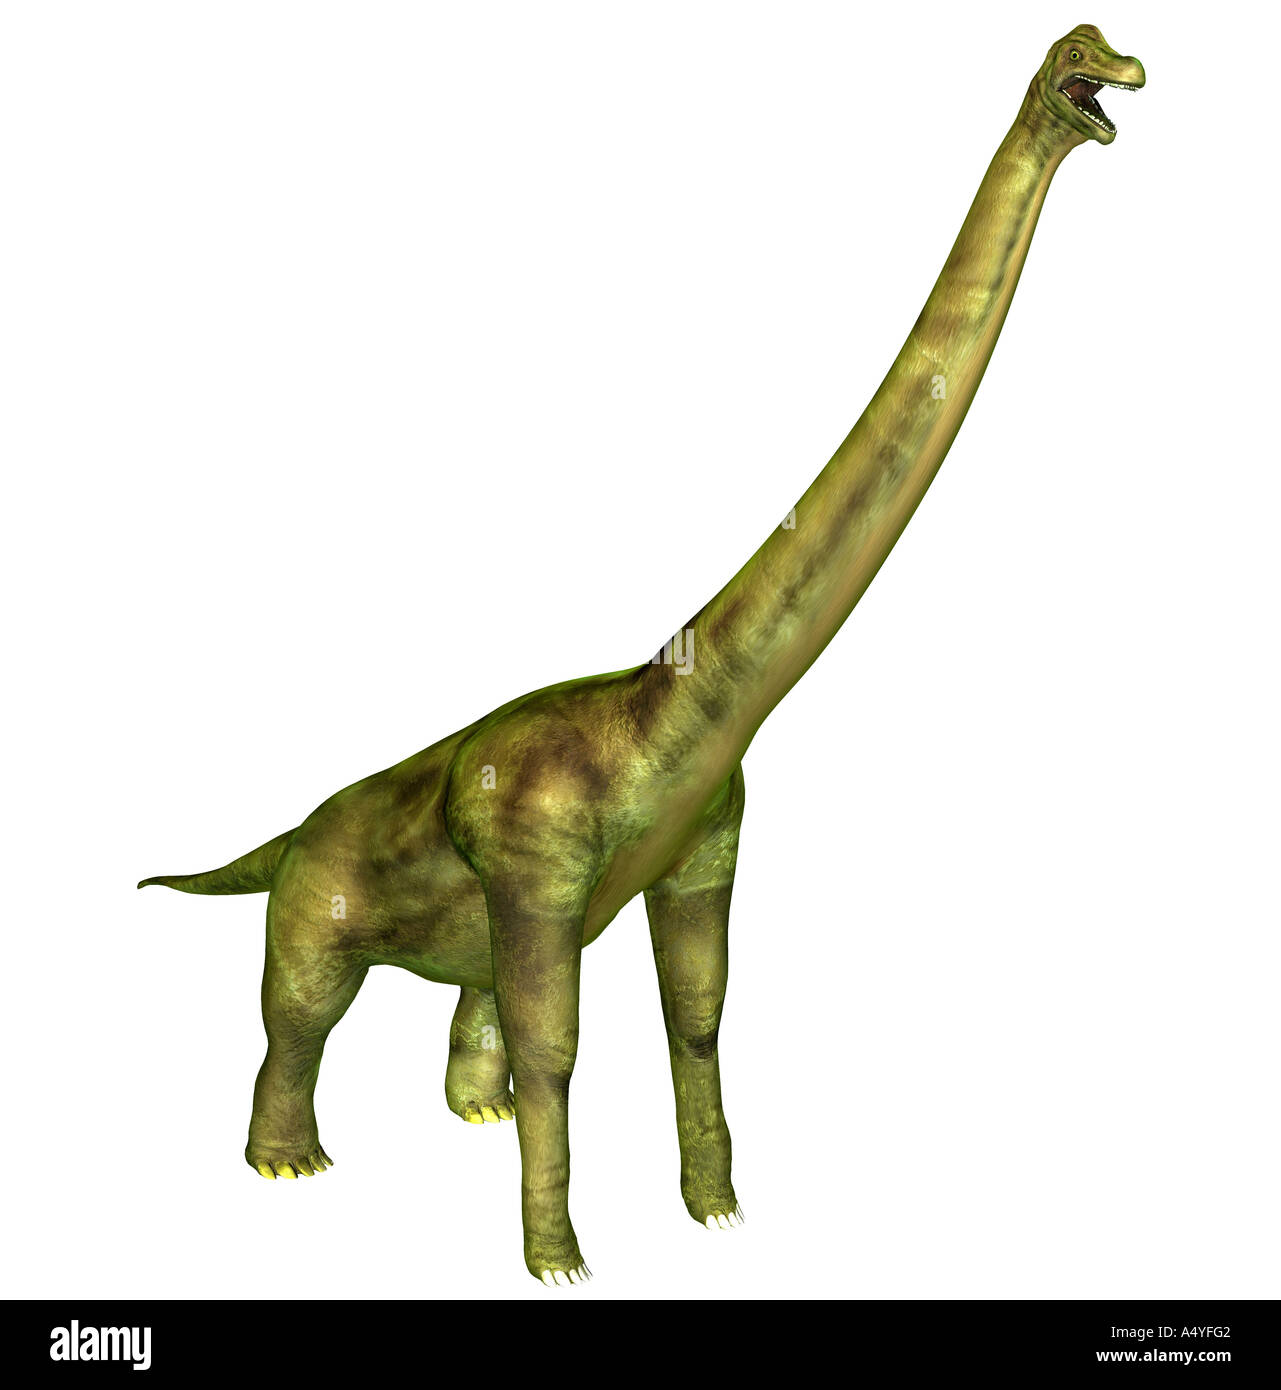 Le brachiosaure paraissait aussi lézard bras mentionnées dans le Jurassique, avait un poids d'environ 80 tonnes, une longueur d'environ 23 m Banque D'Images